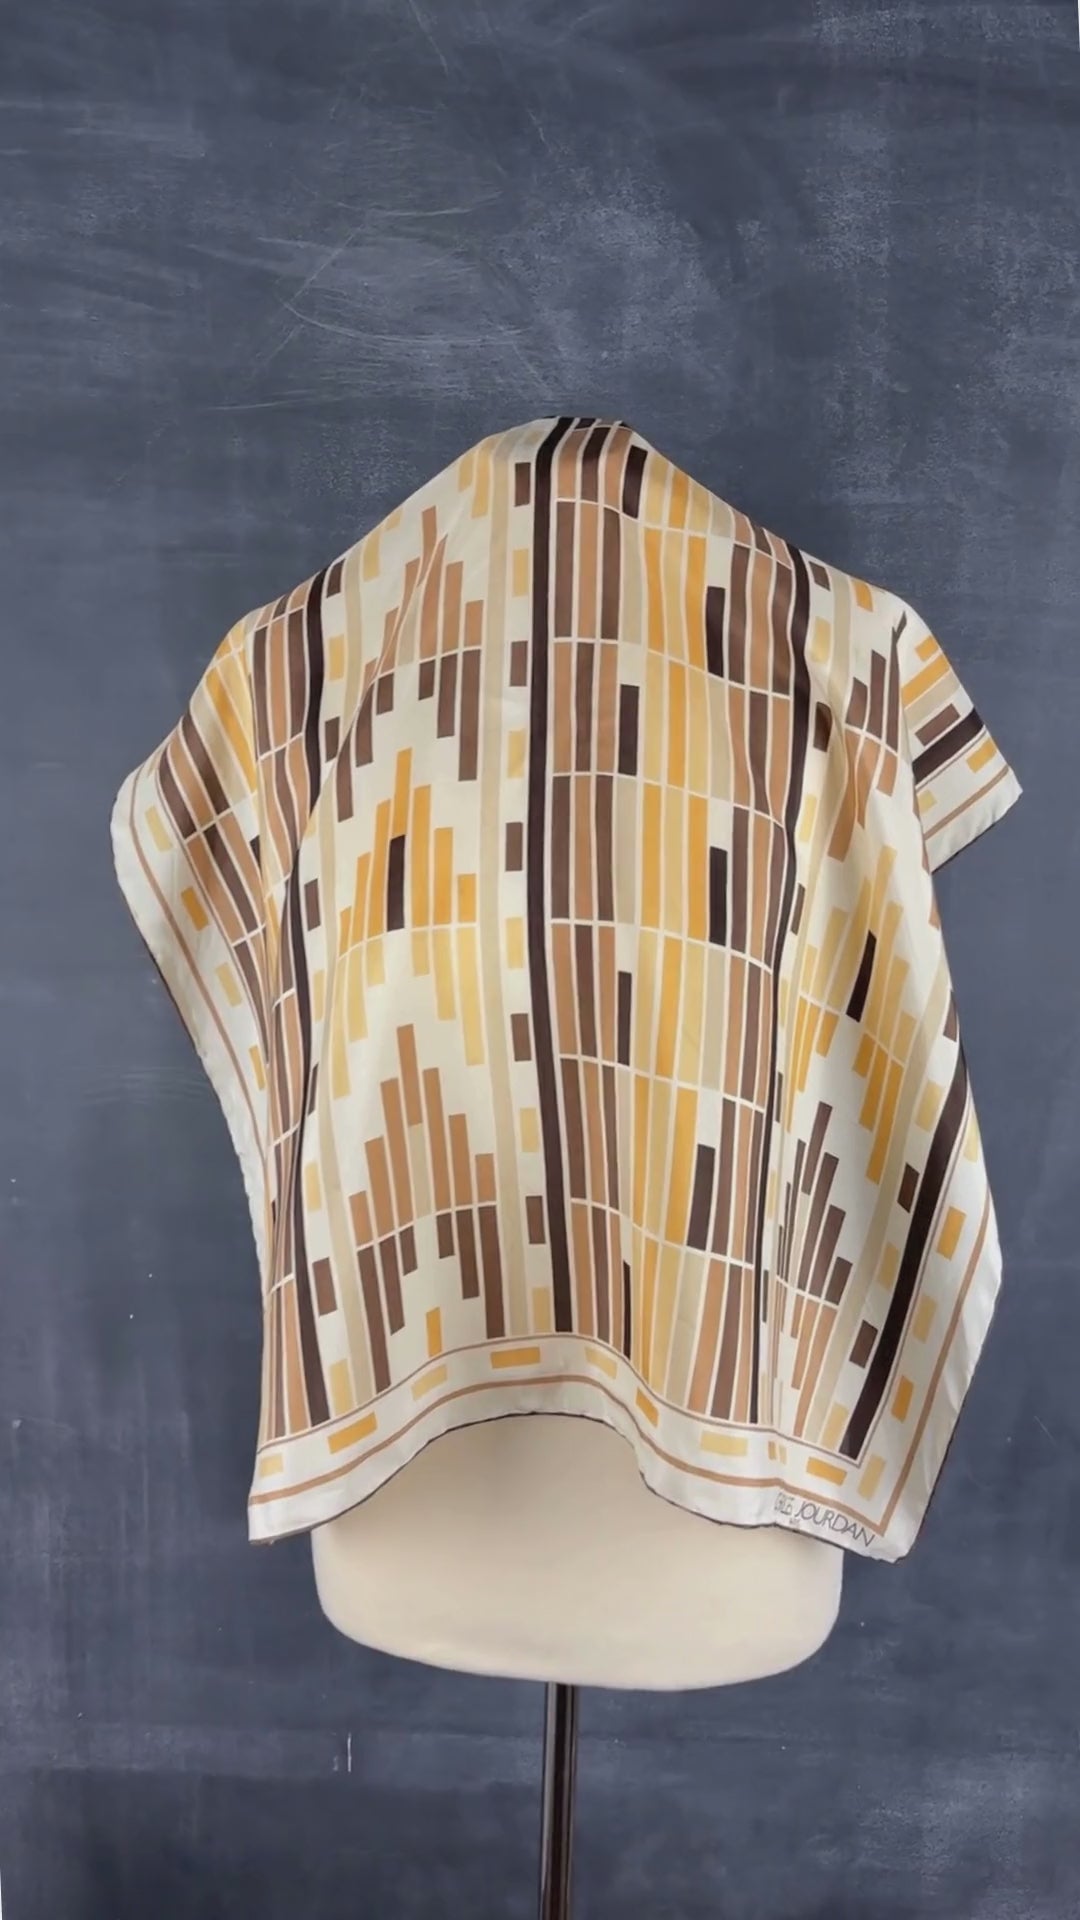 Foulard en soie motifs rectanguraires, carré. Vue de la vidéo qui présente tous les détails du foulard.